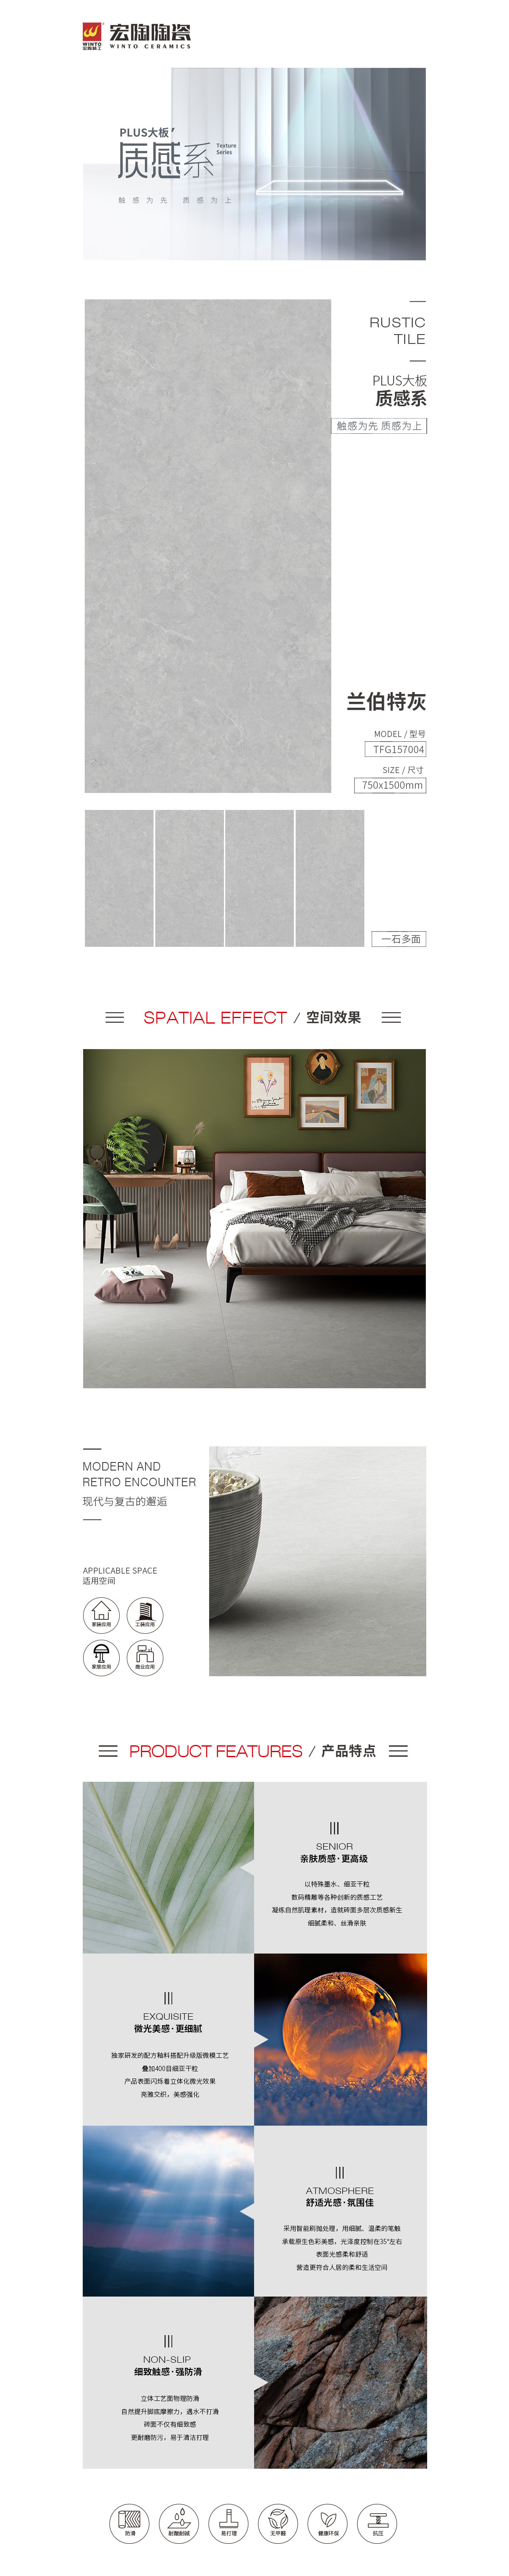 尊龙凯时质感砖TFG157004兰伯特灰陶瓷大板图片、规格型号特点优势详细先容。